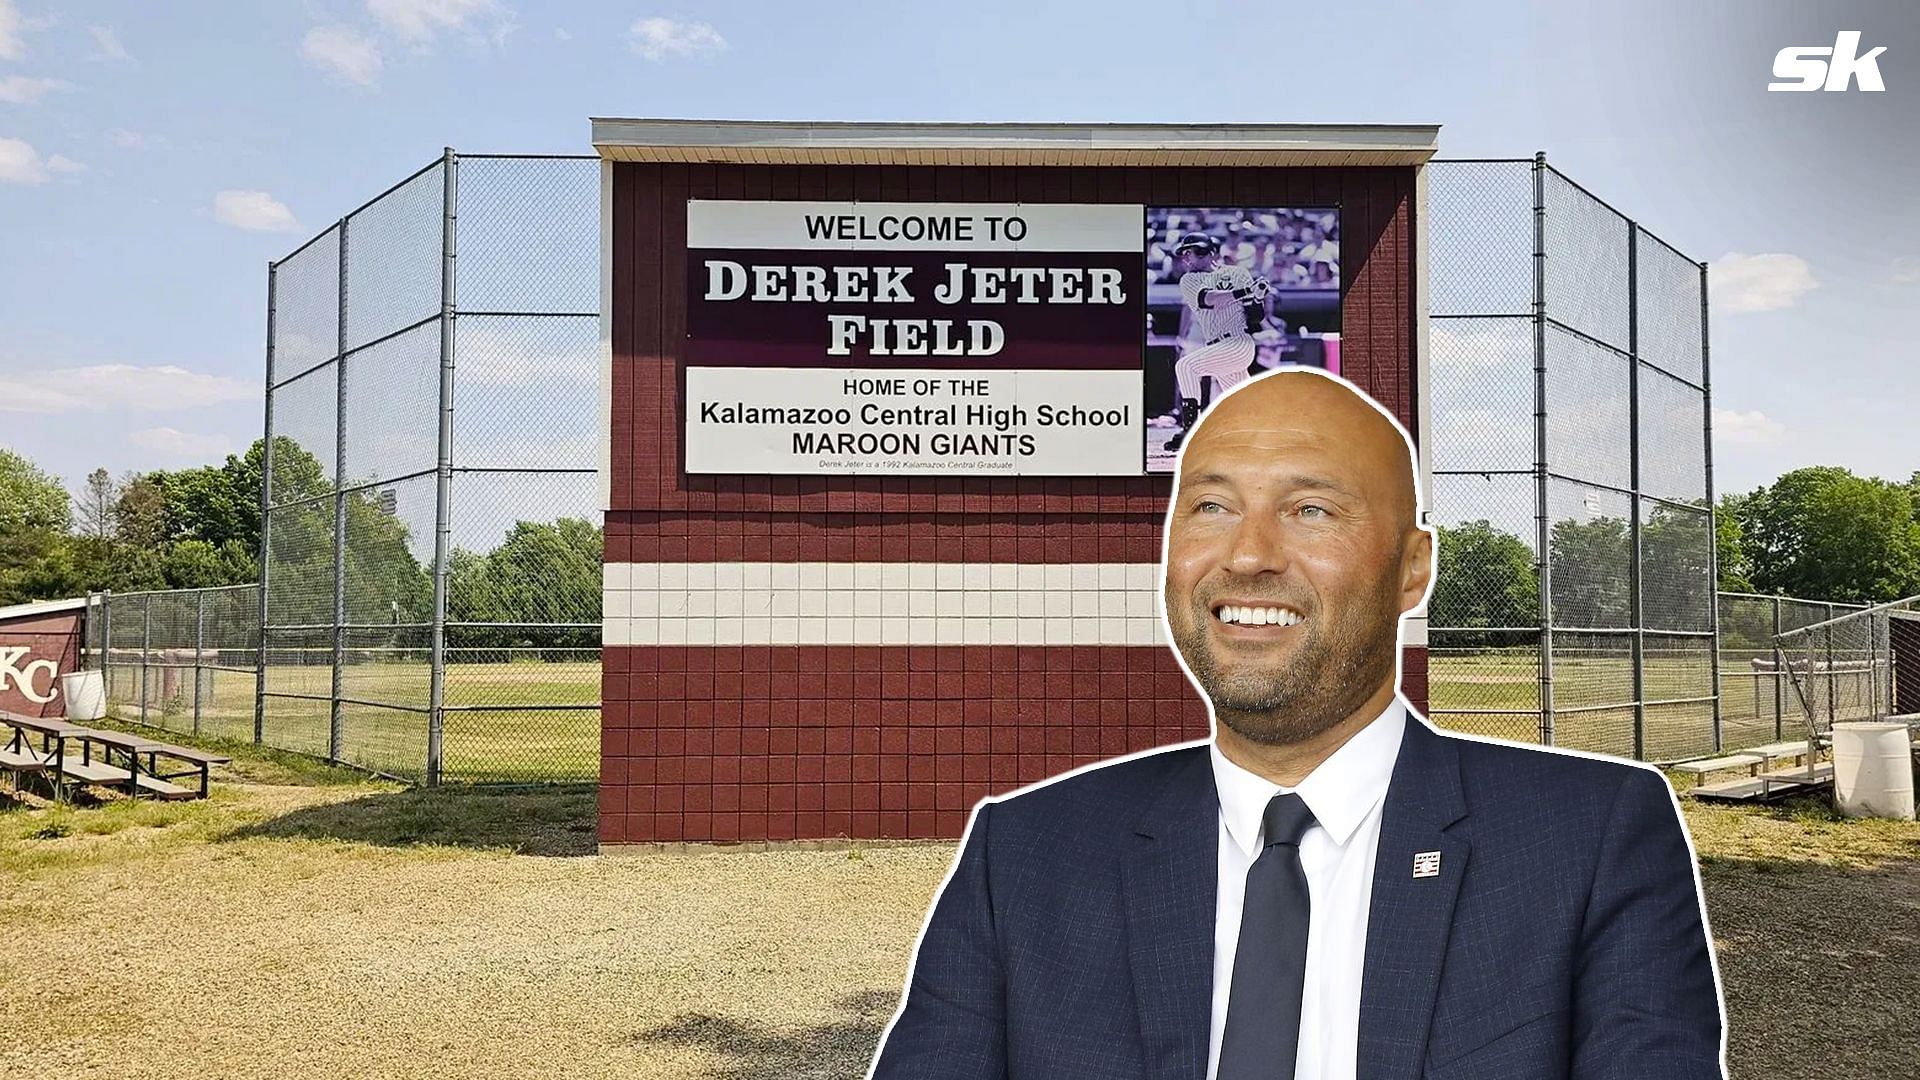 Derek Jeter is investing in his hometown